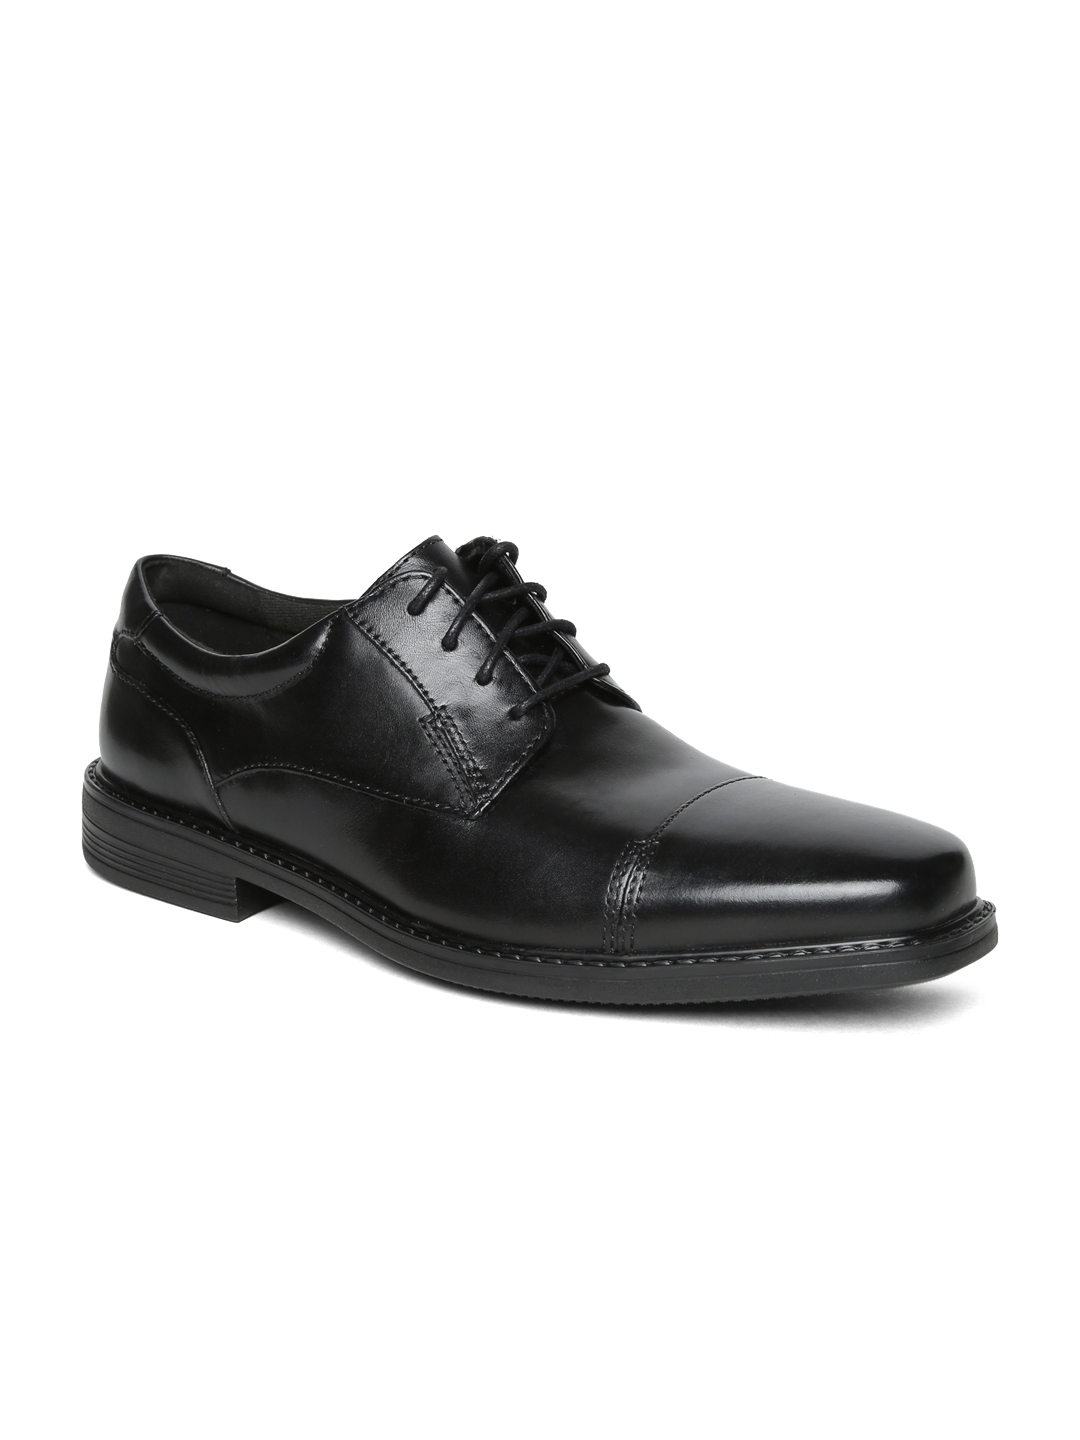 Buy Clarks Men Black Leather Derbys - Formal Shoes for Men 6709934 | Myntra